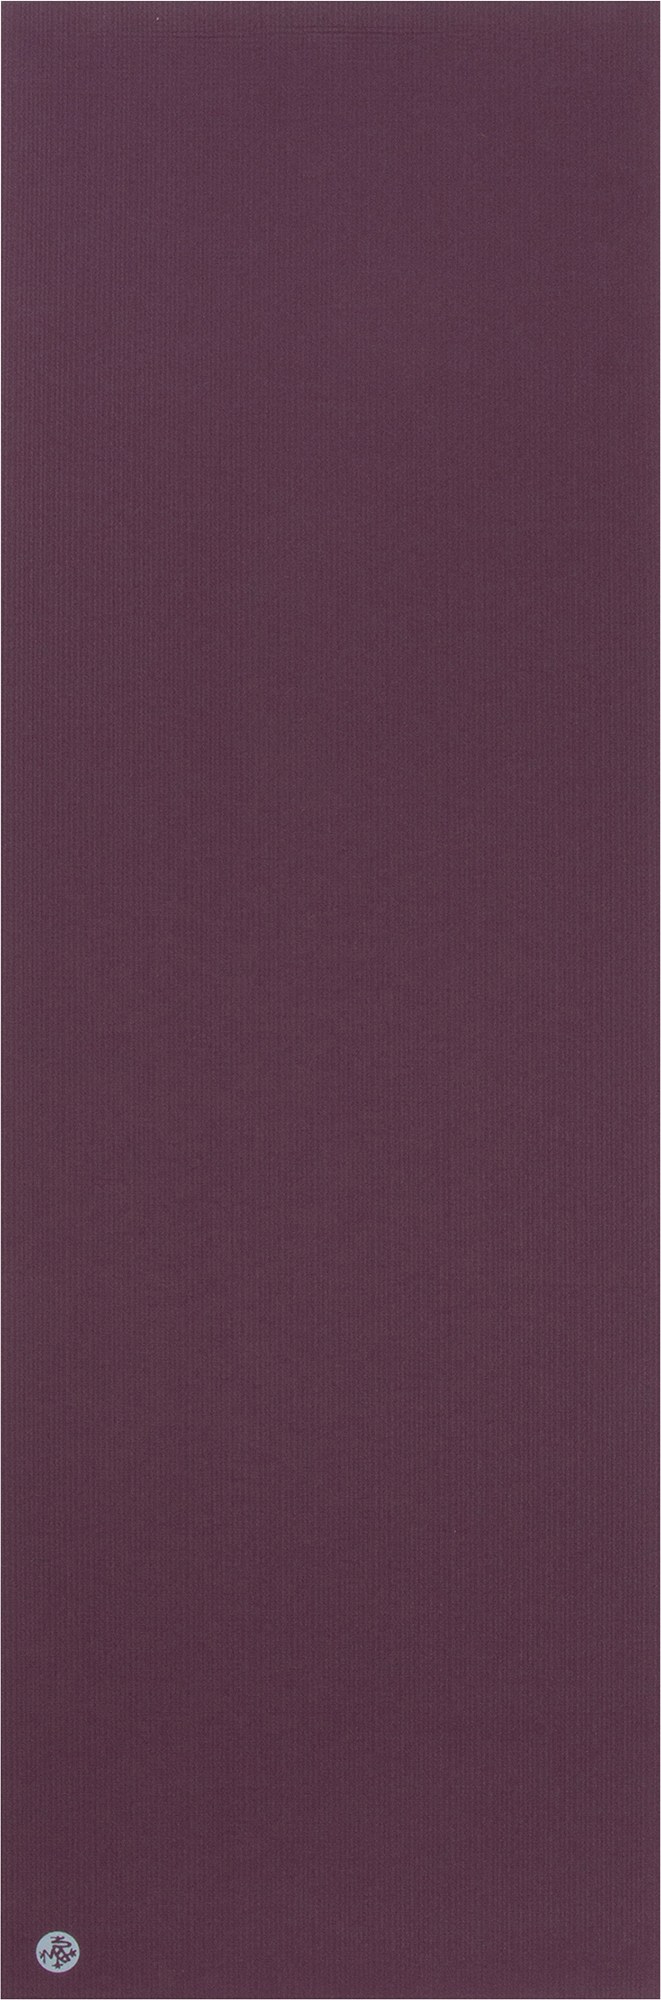 PROlite коврик для йоги Manduka, фиолетовый